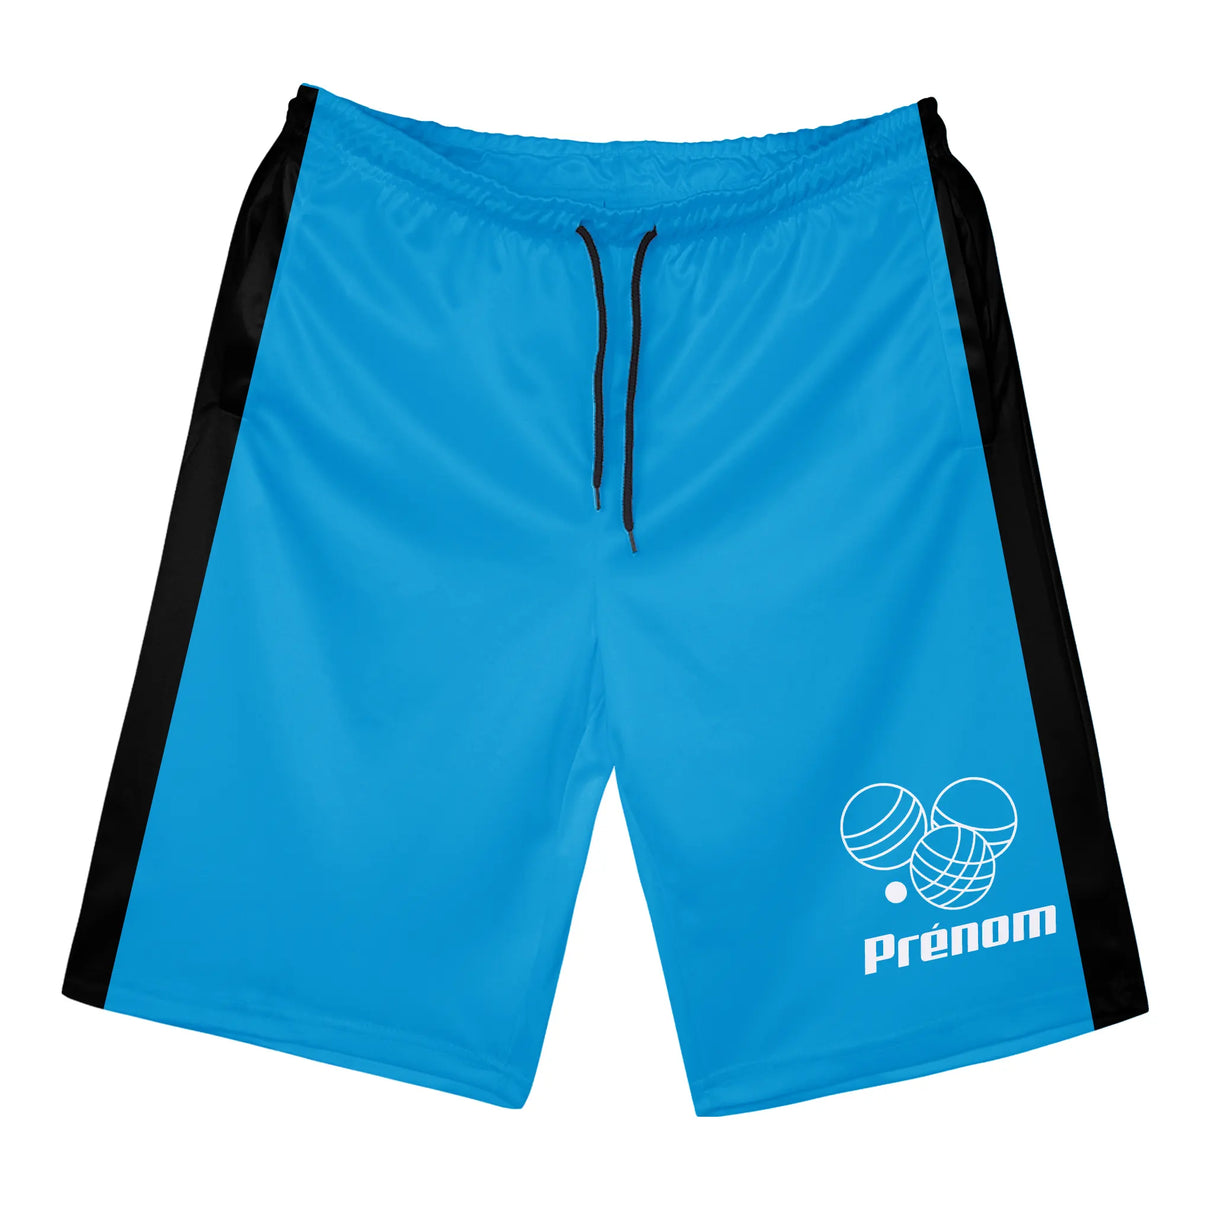 Shorts de Sport Prénom – Confort et Style pour Chaque Match - A010724N36 - Bleu Vif